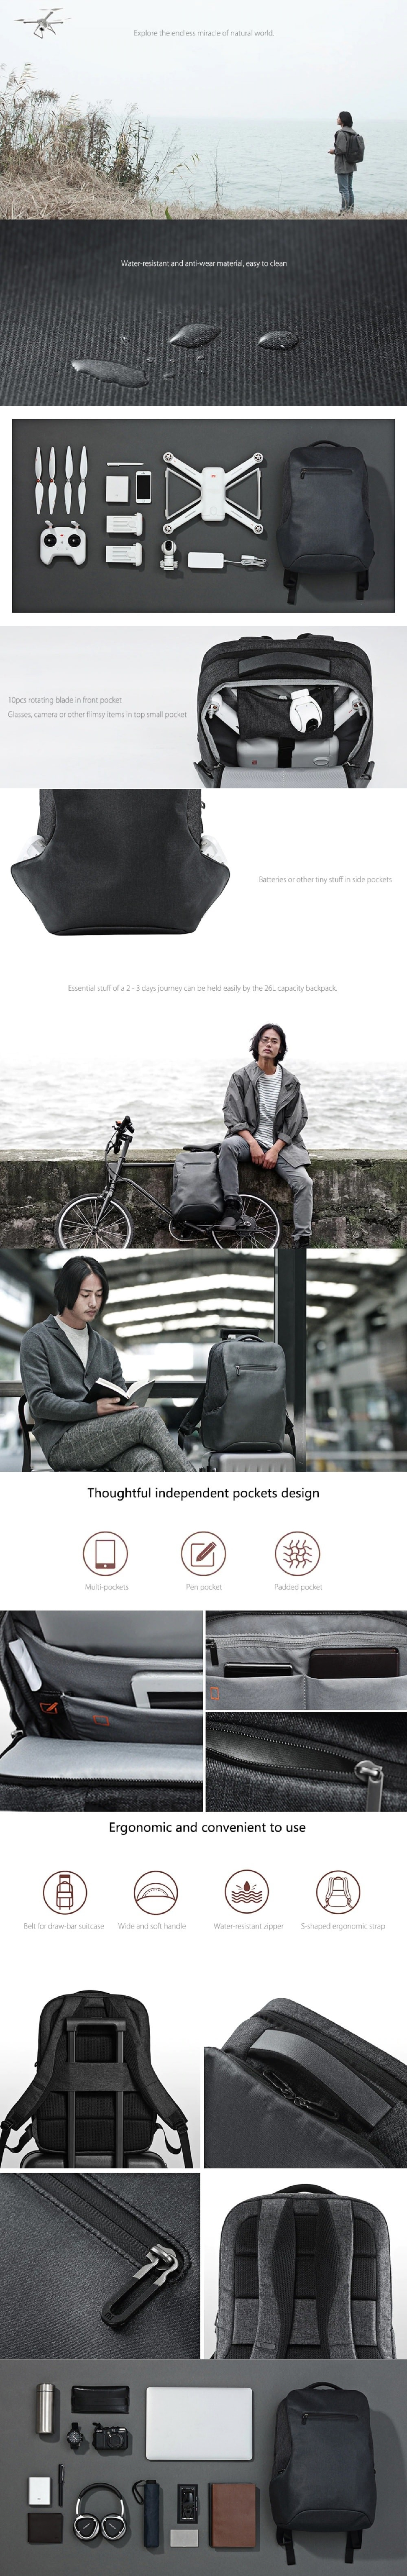 Prezentare-Xiaomi-Mi-Urban-Backpackeb0fdc3817e0aea7.jpg